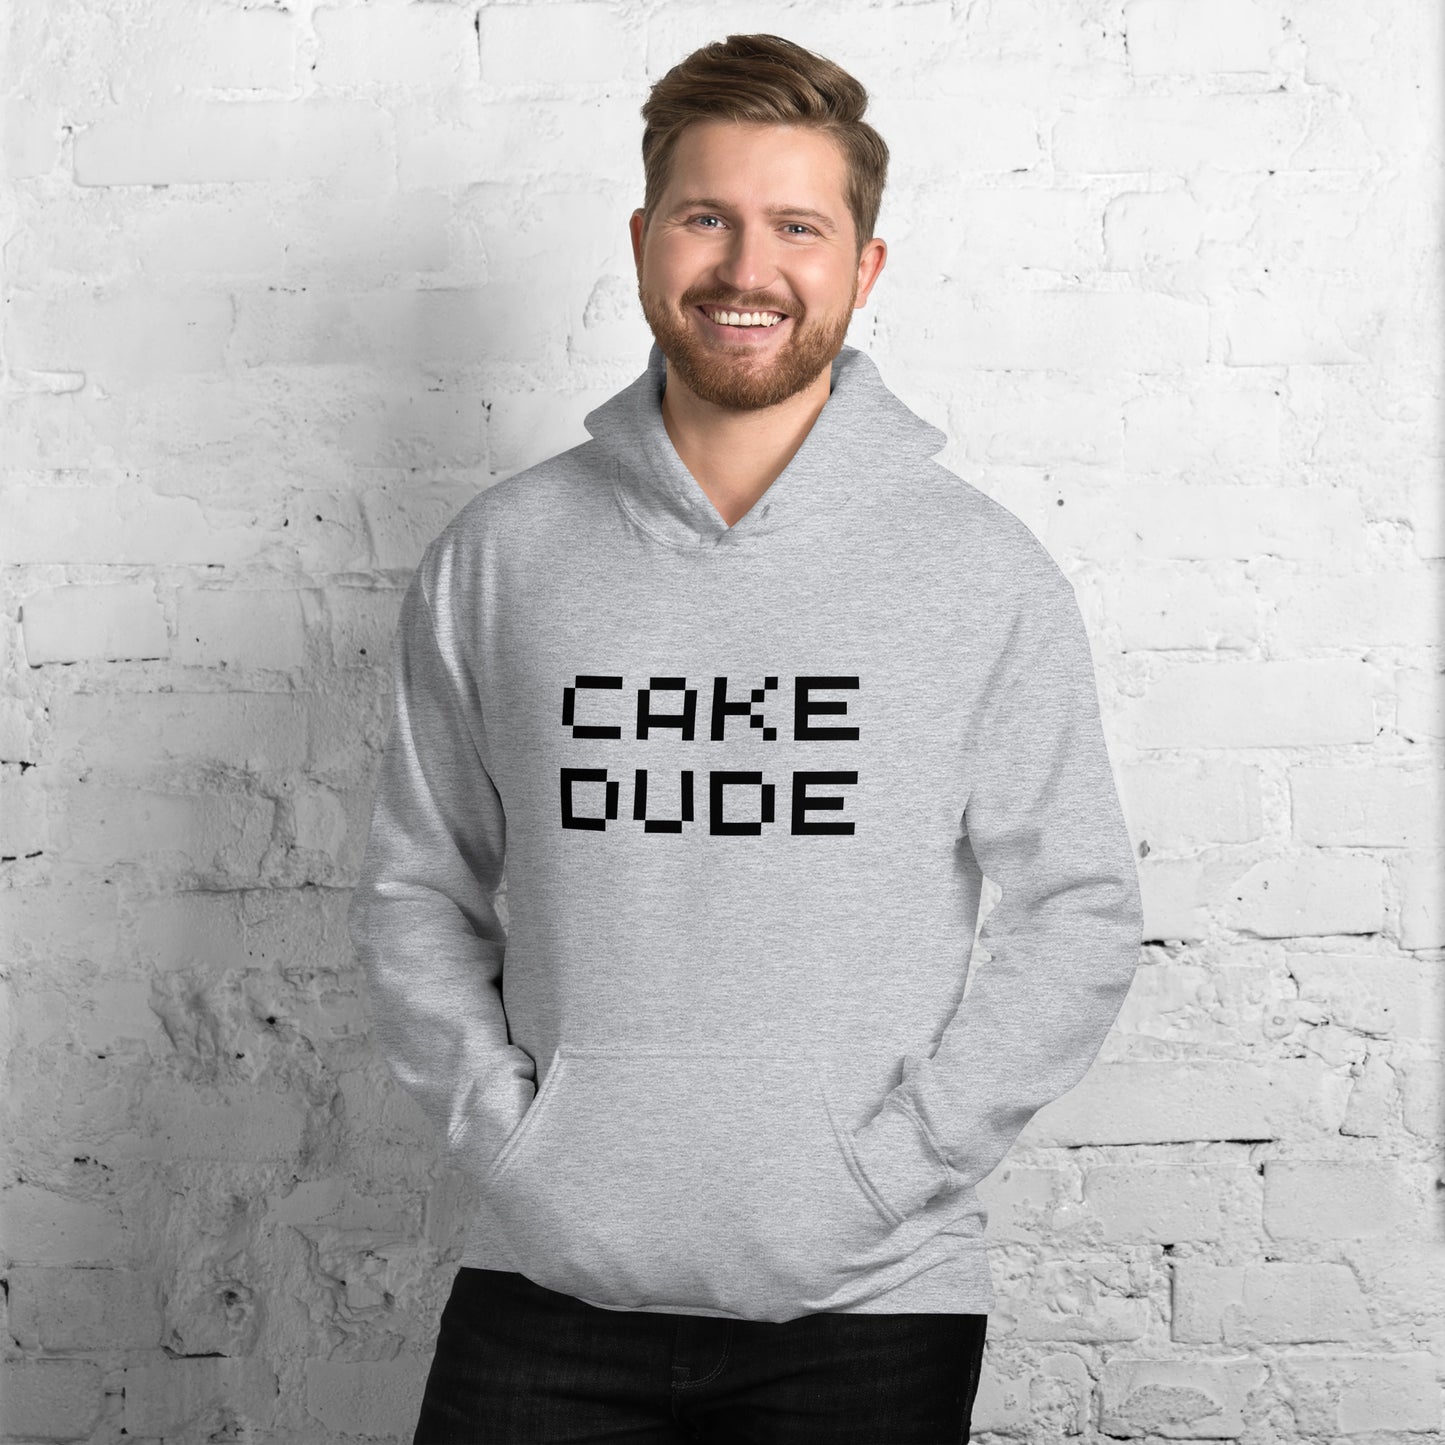 Cake Dude Unisex Hoodie